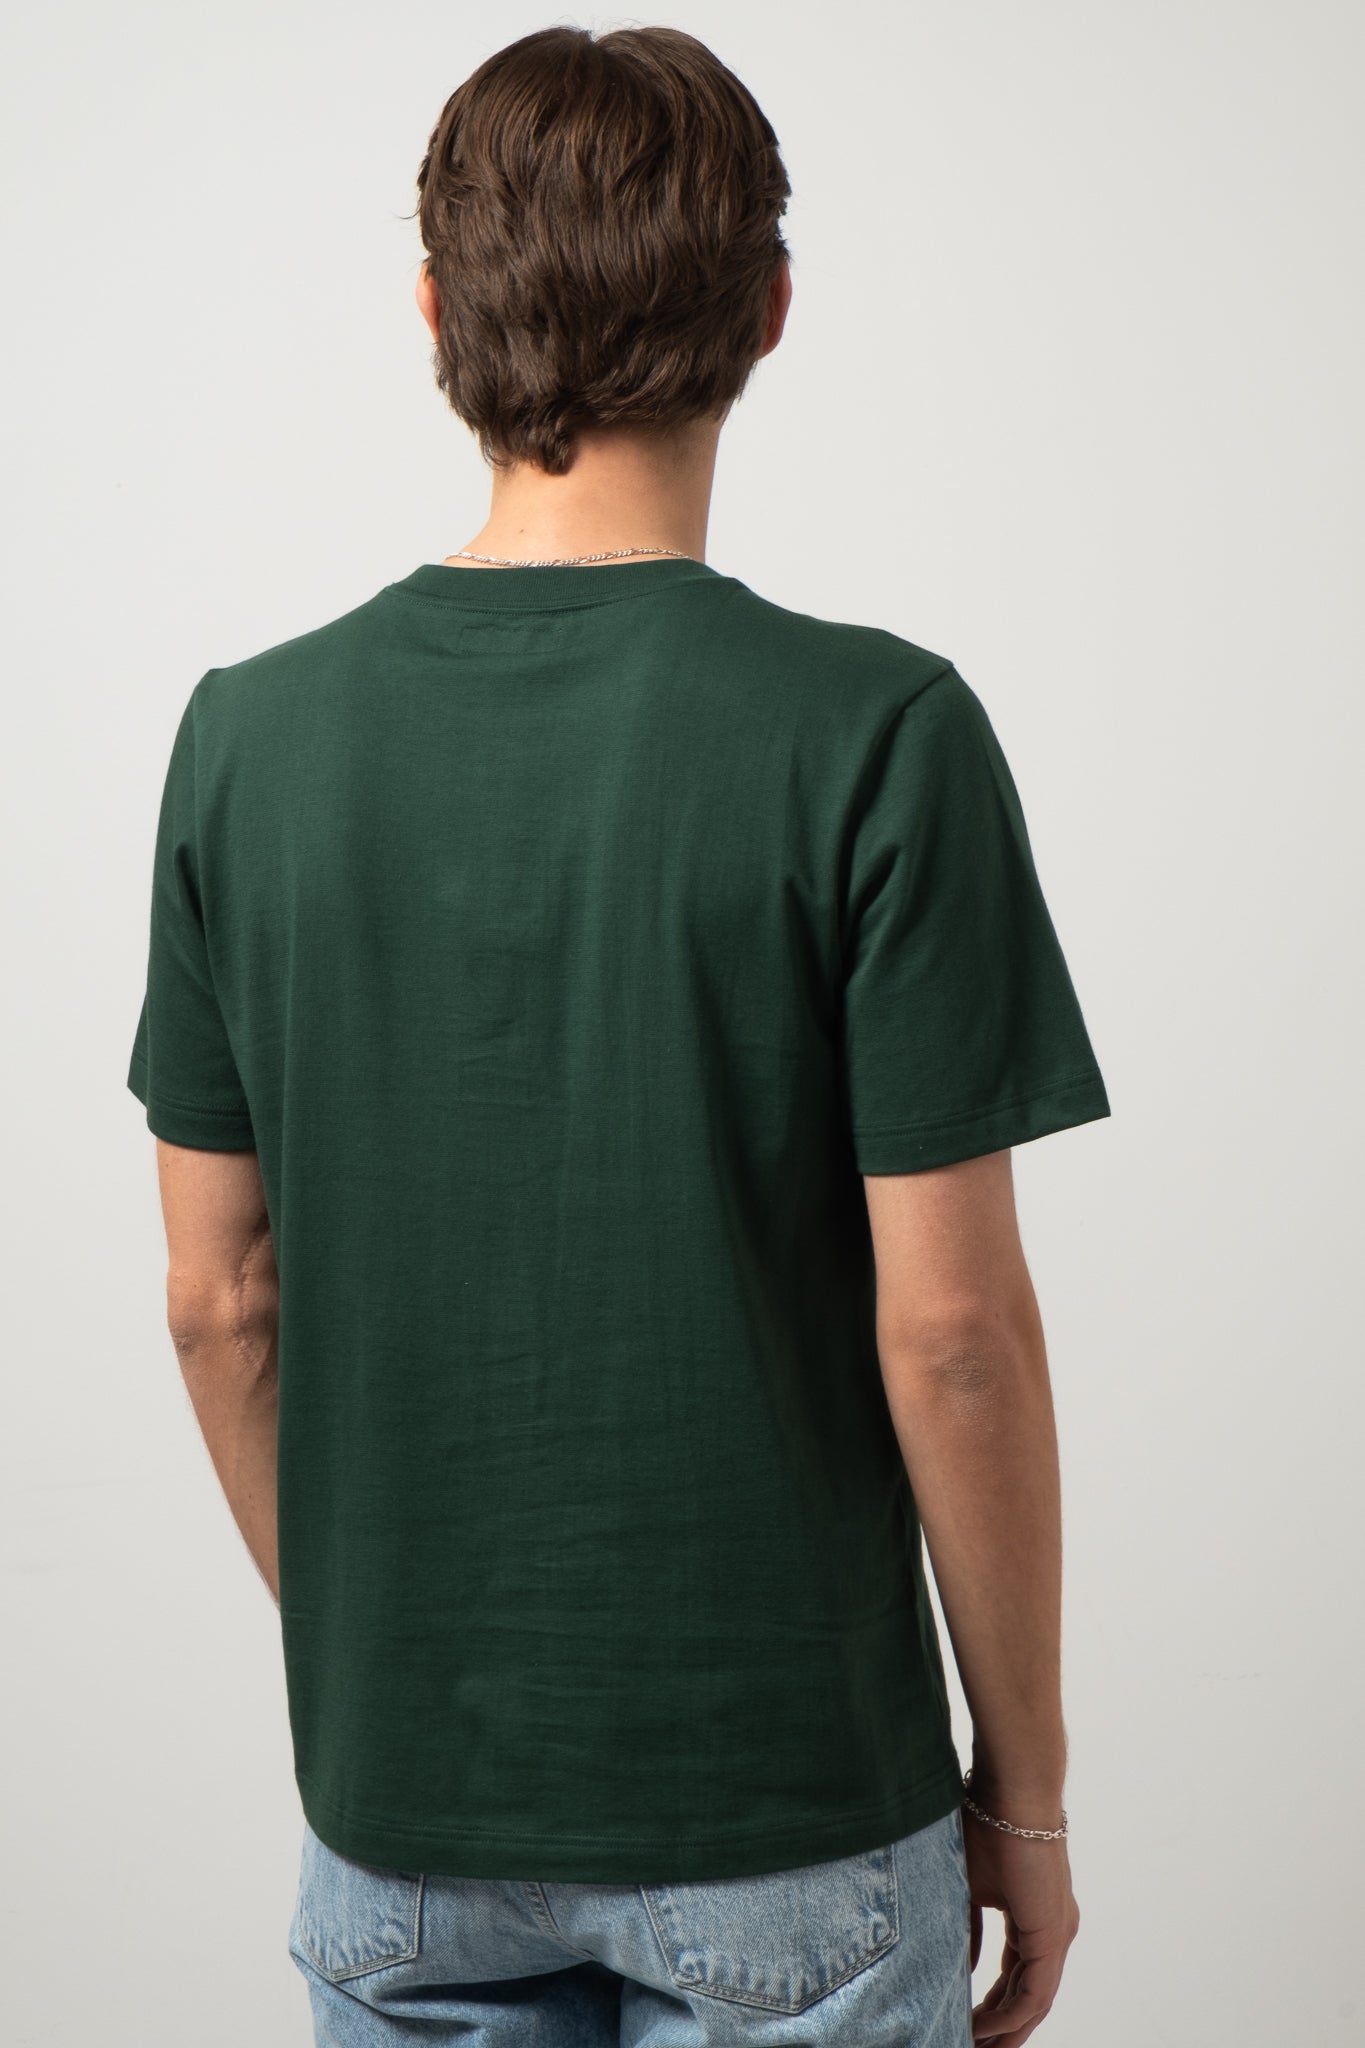 Good Originals 5.5oz T-Shirt - Classic Green